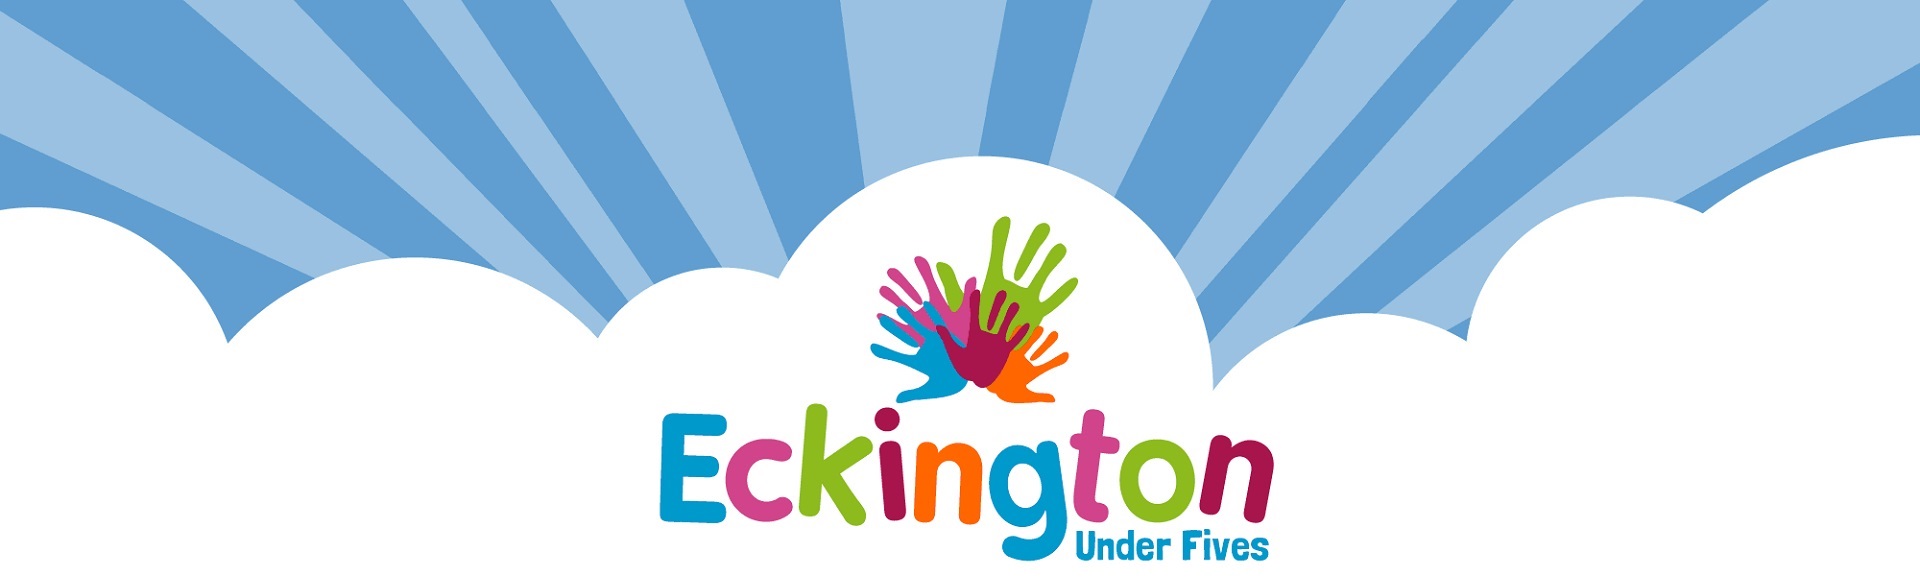 Eckington-Under-5s-Home_1920x580